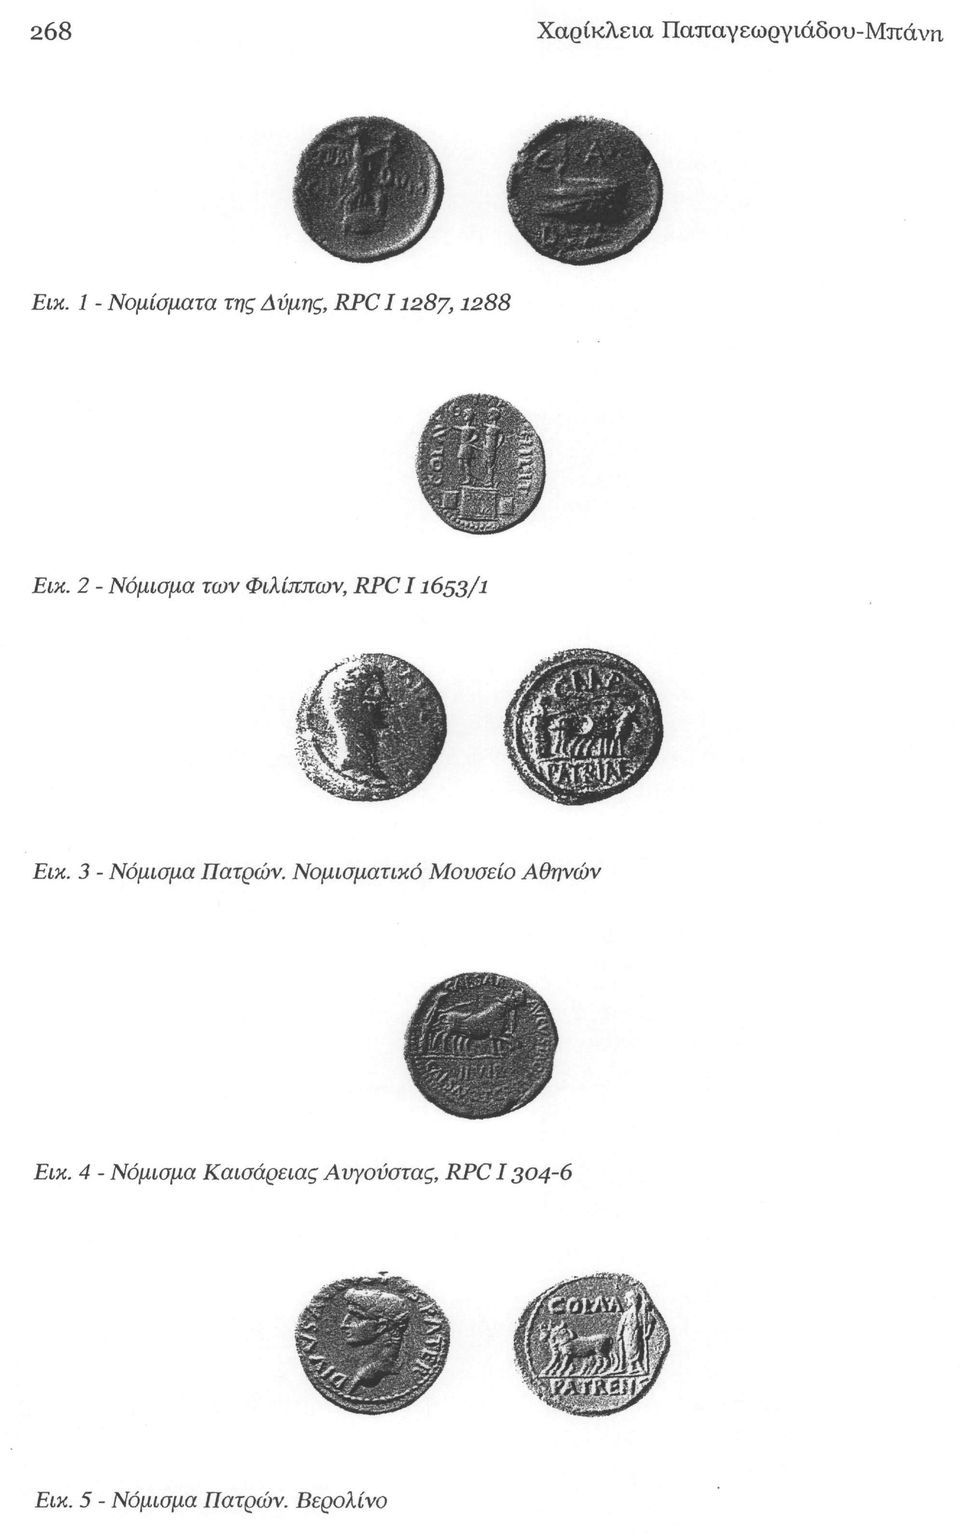 2 - Νόμισμα των Φιλίππων, RPC11653/ 1 Εικ. 3 - Νόμισμα Πατρών.